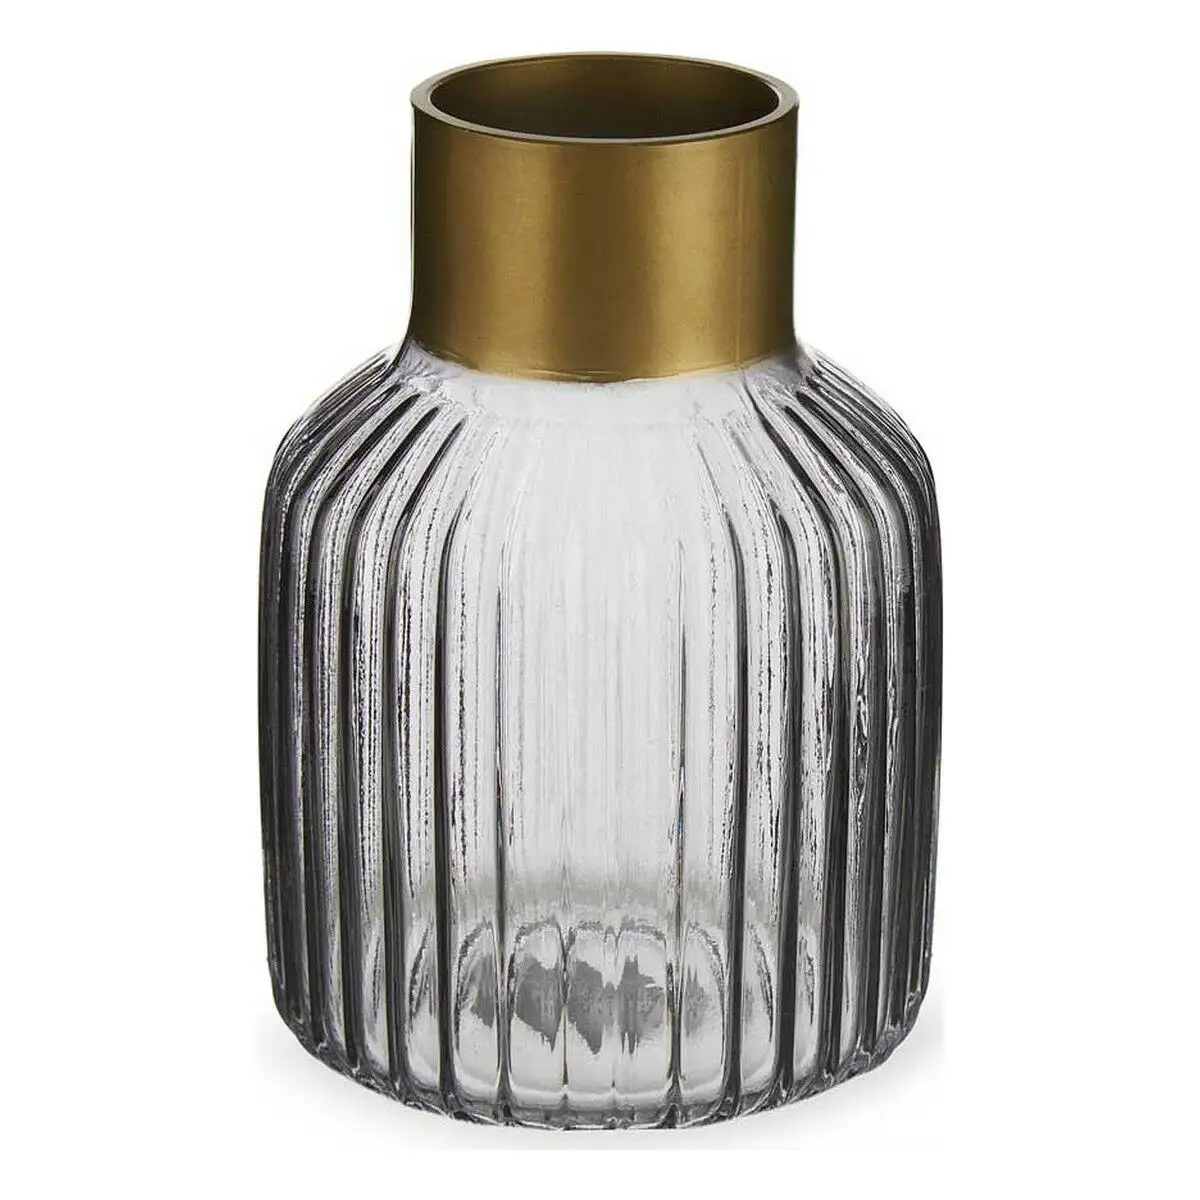 Vase rayures gris dore verre 12 x 18 x 12 cm _1394. DIAYTAR SENEGAL - L'Art de Choisir, l'Art de S'émerveiller. Explorez notre gamme de produits et laissez-vous émerveiller par des créations authentiques et des designs modernes.